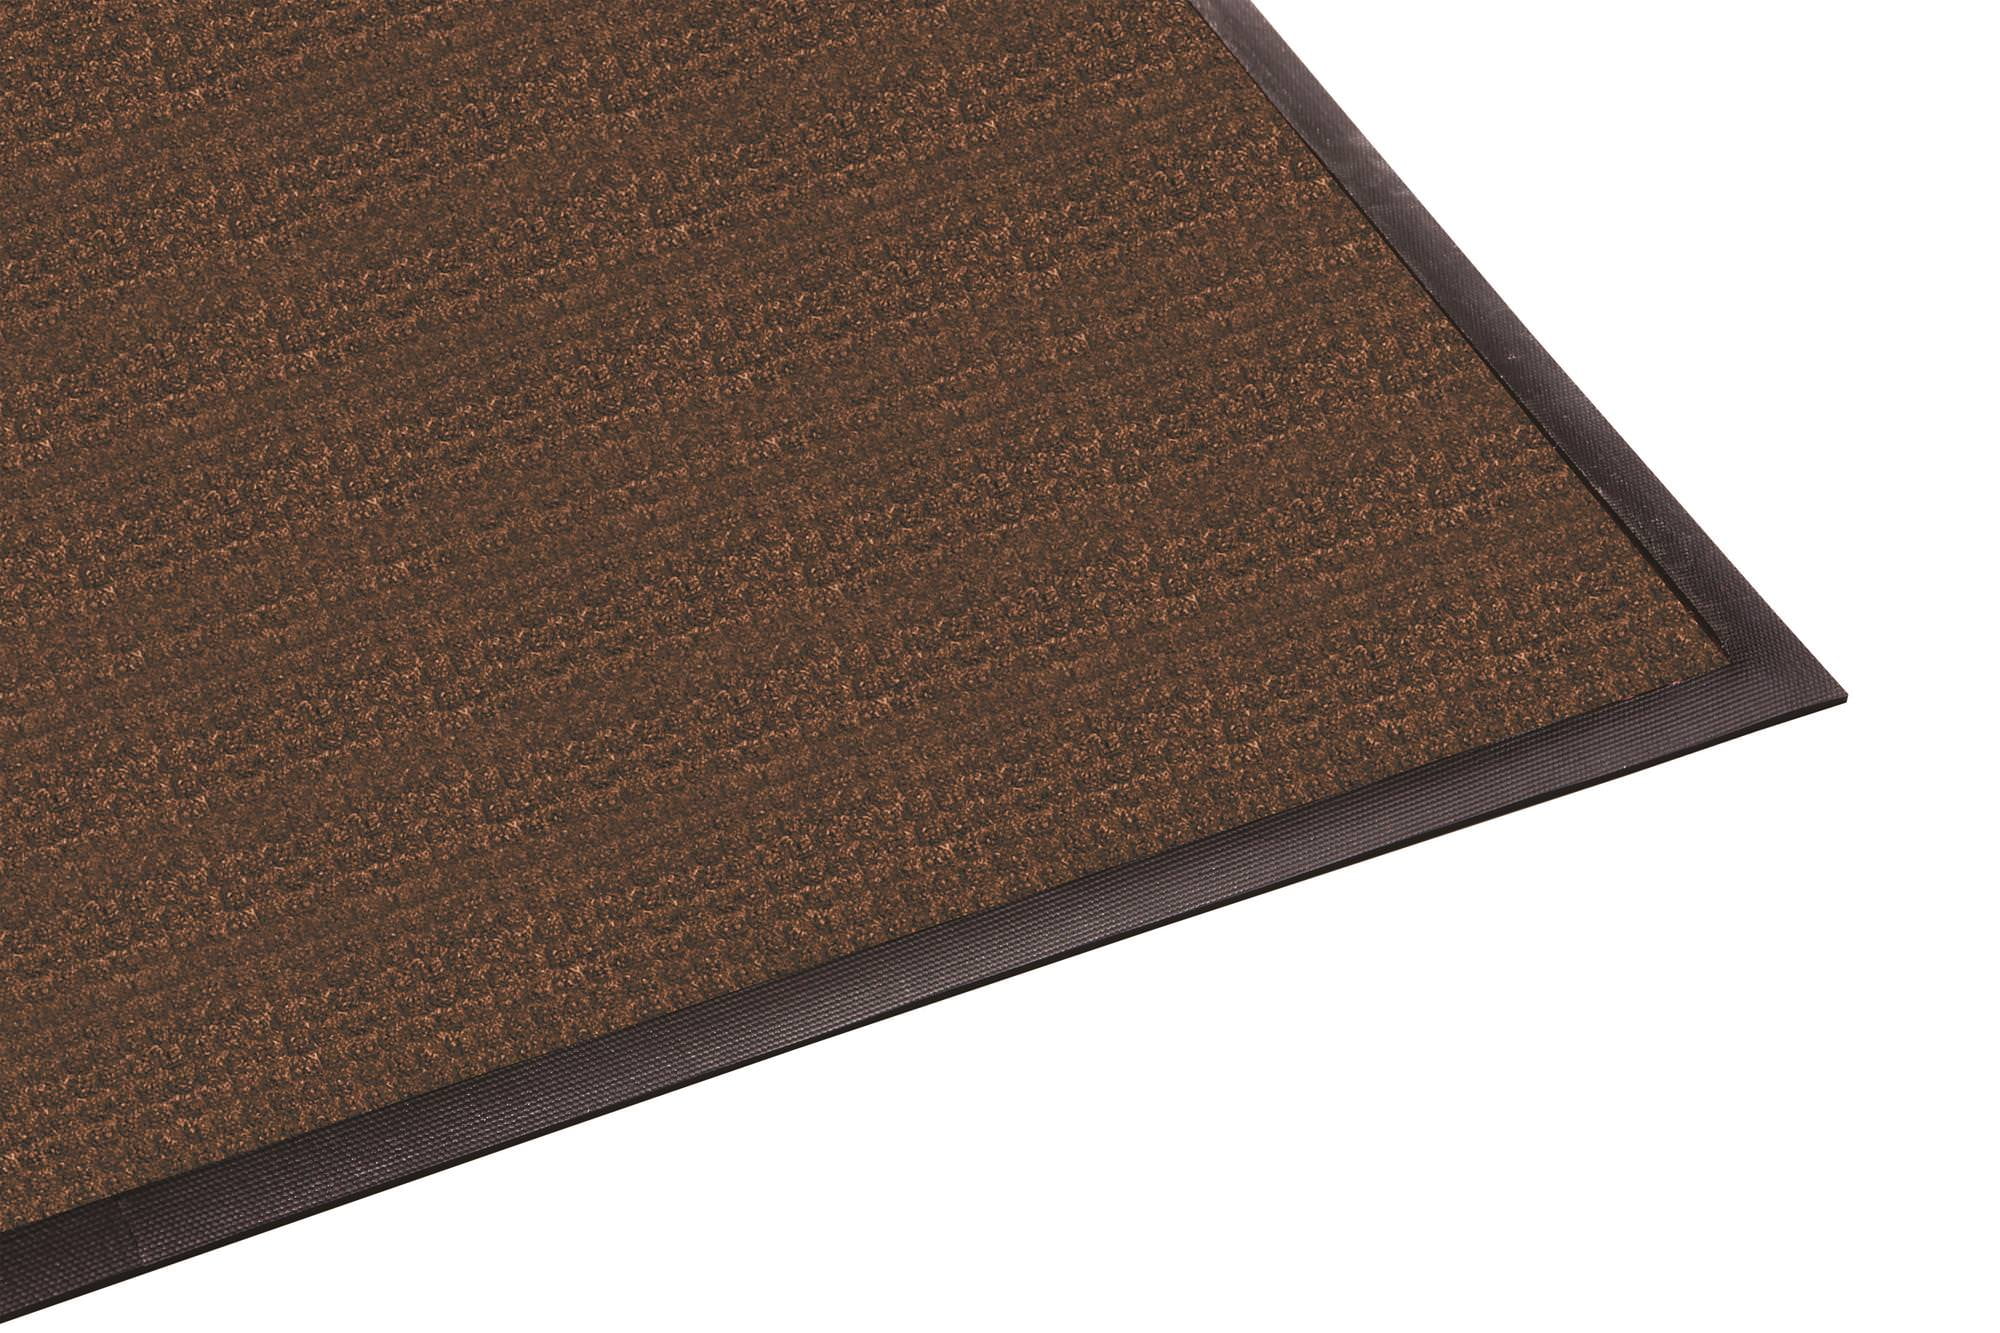 Guardian WaterGuard Indoor/Outdoor Wiper Scraper Floor Mat Rubber/Nylon Grey 3x5